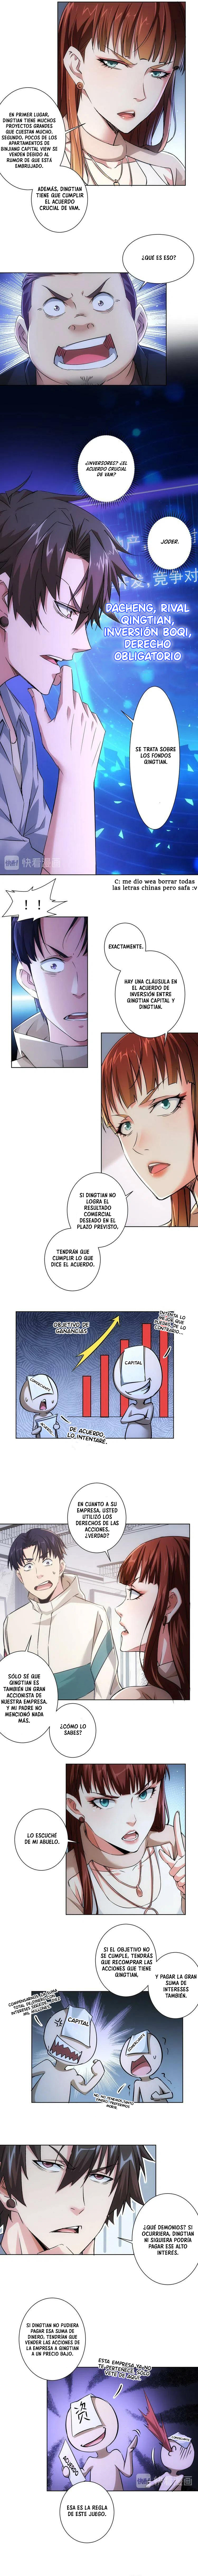 Manga Puedo ver la tasa de exito Chapter 88 image number 1